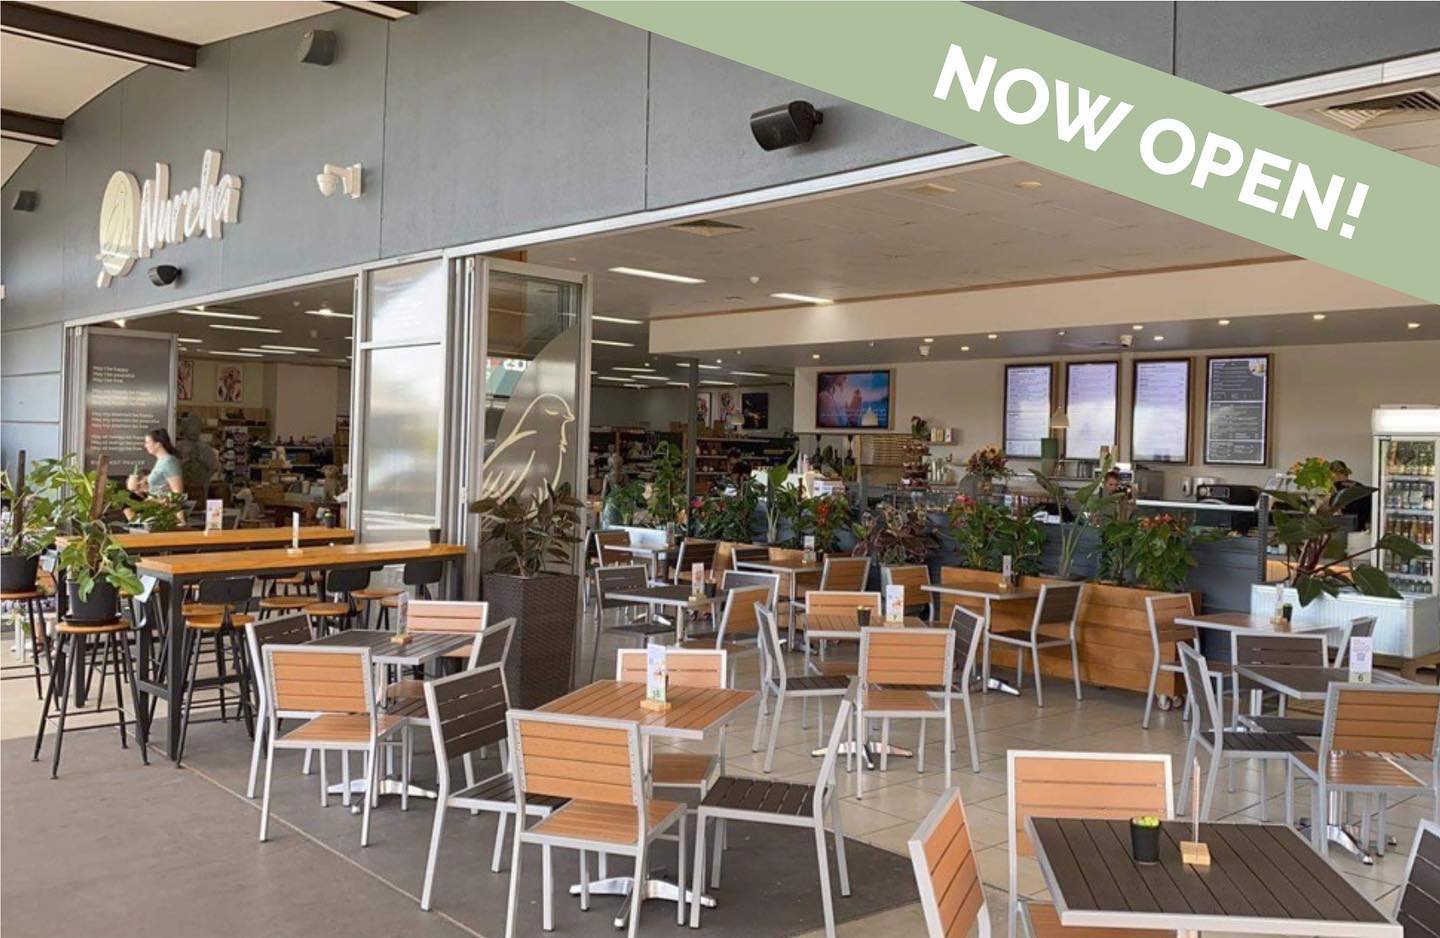 Nurcha Kawana vegan cafe and vegan bakery now open.